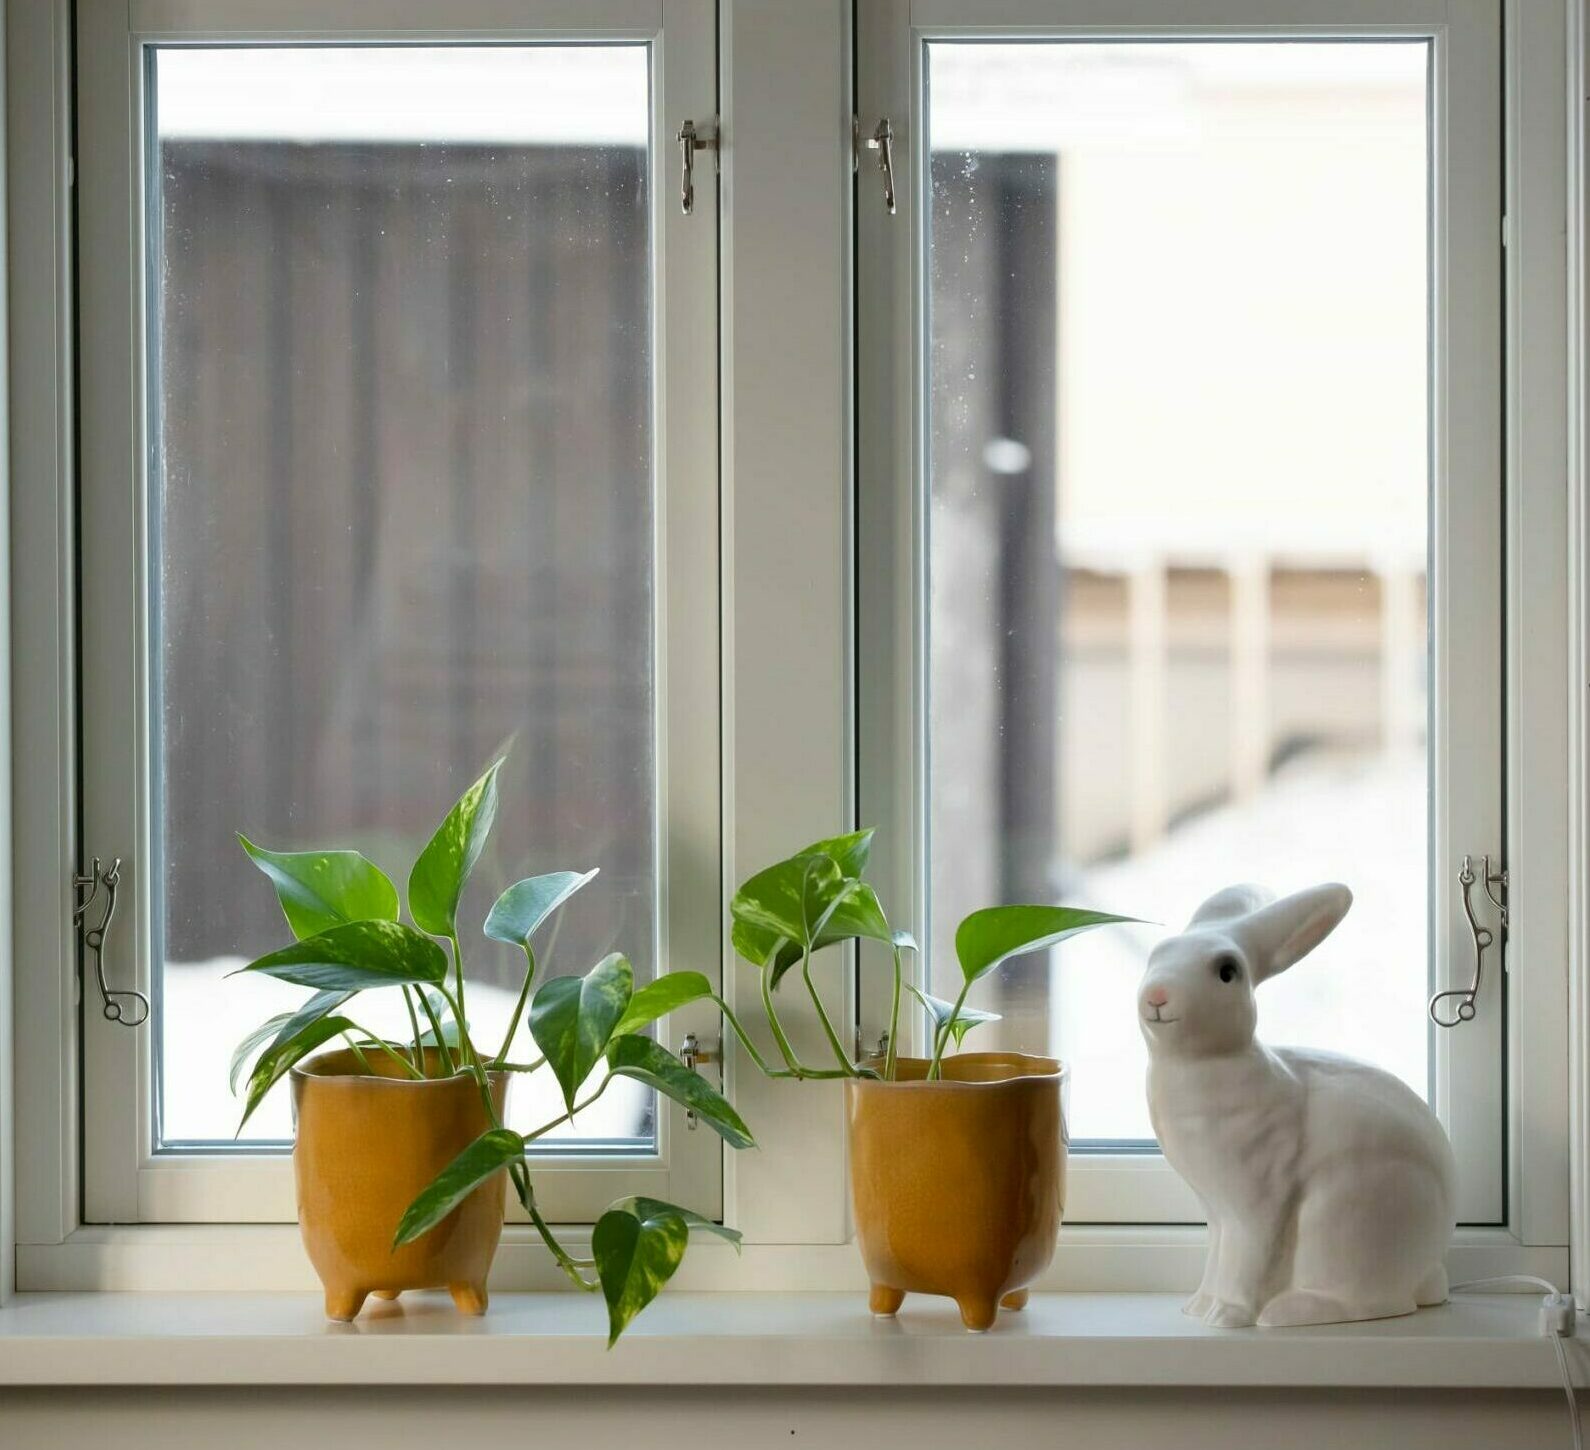 Energieffektivseringsstödet kan bli 30 000 kr per hus för att byta fönster